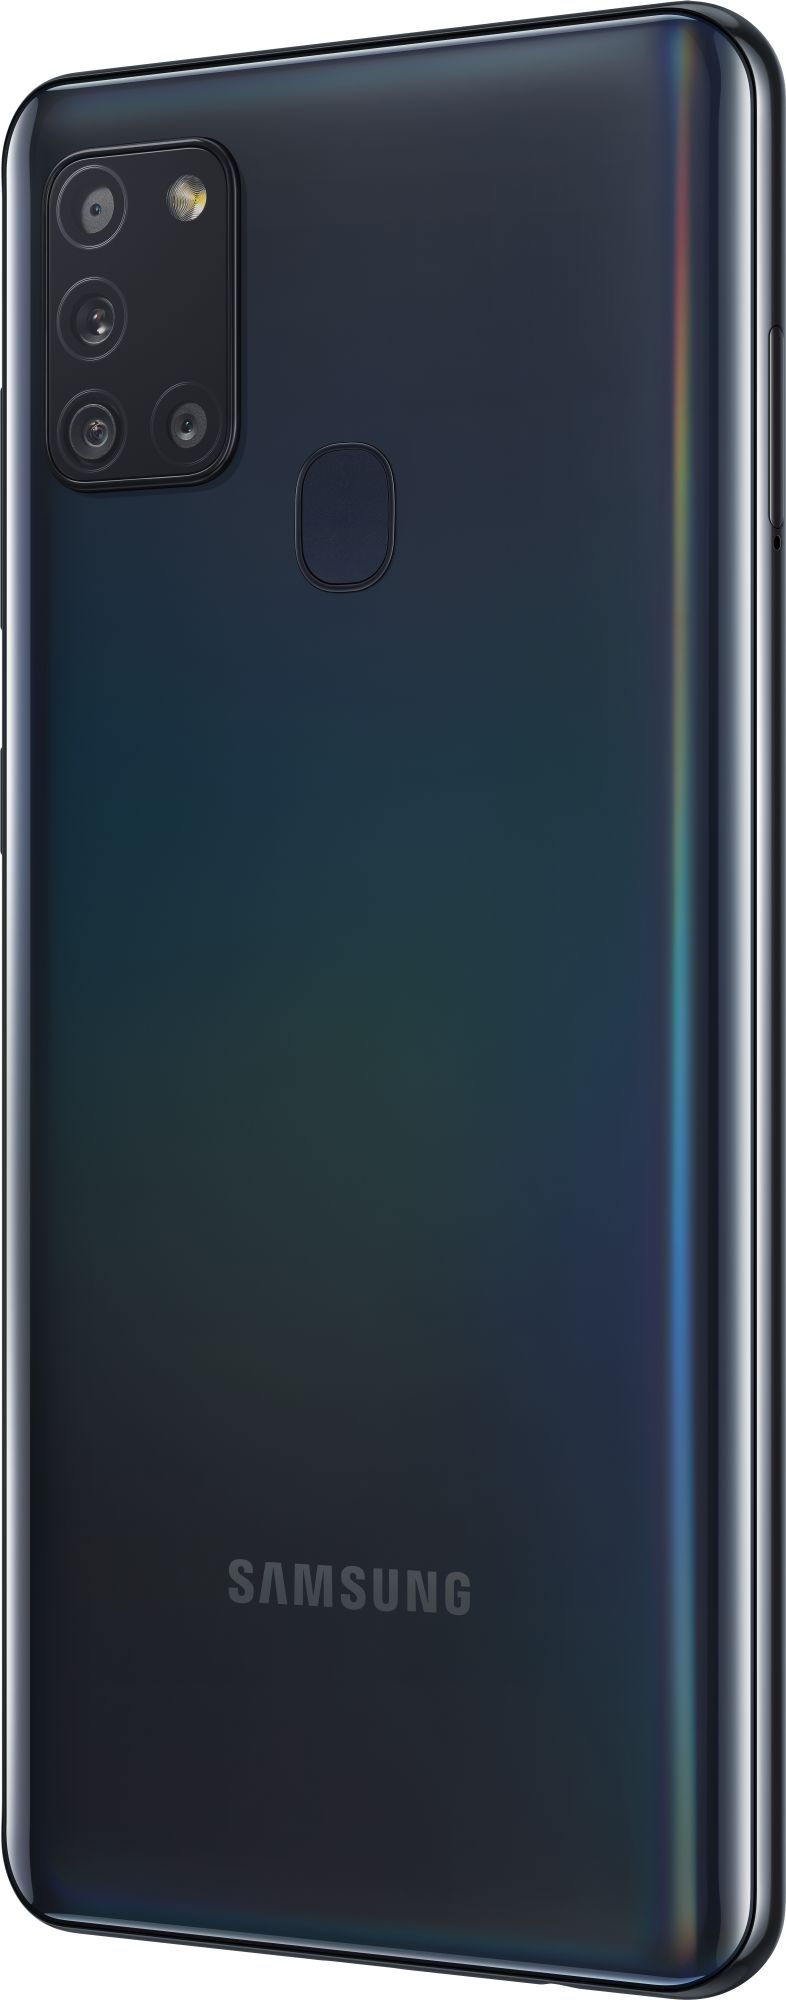 Samsung Galaxy A21s 64GB Black